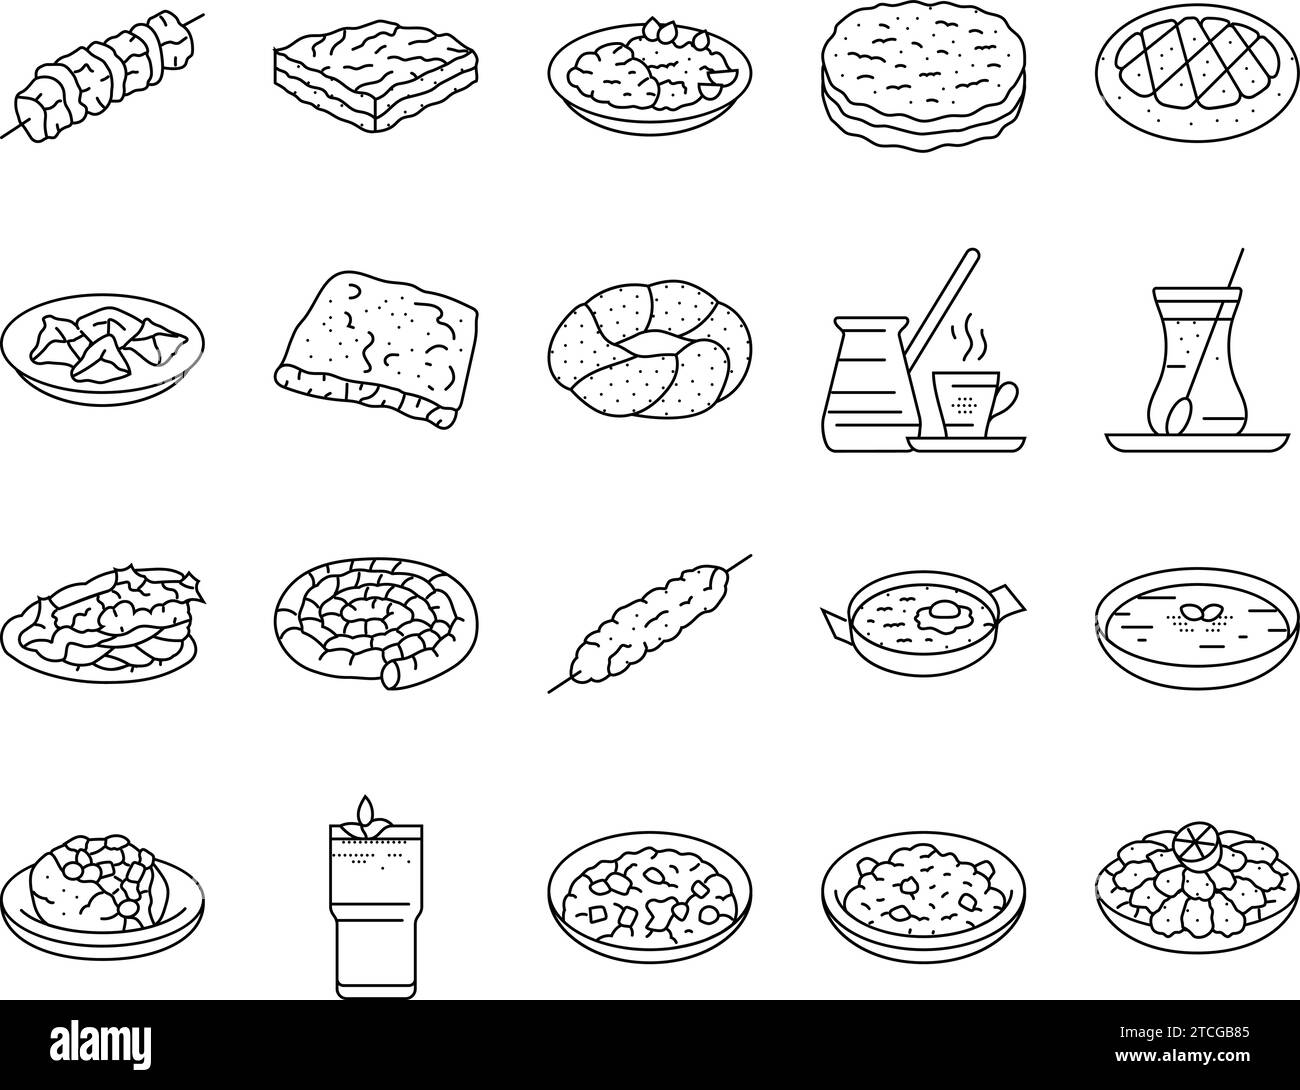 vecteur d'ensemble d'icônes de repas de cuisine turque Illustration de Vecteur